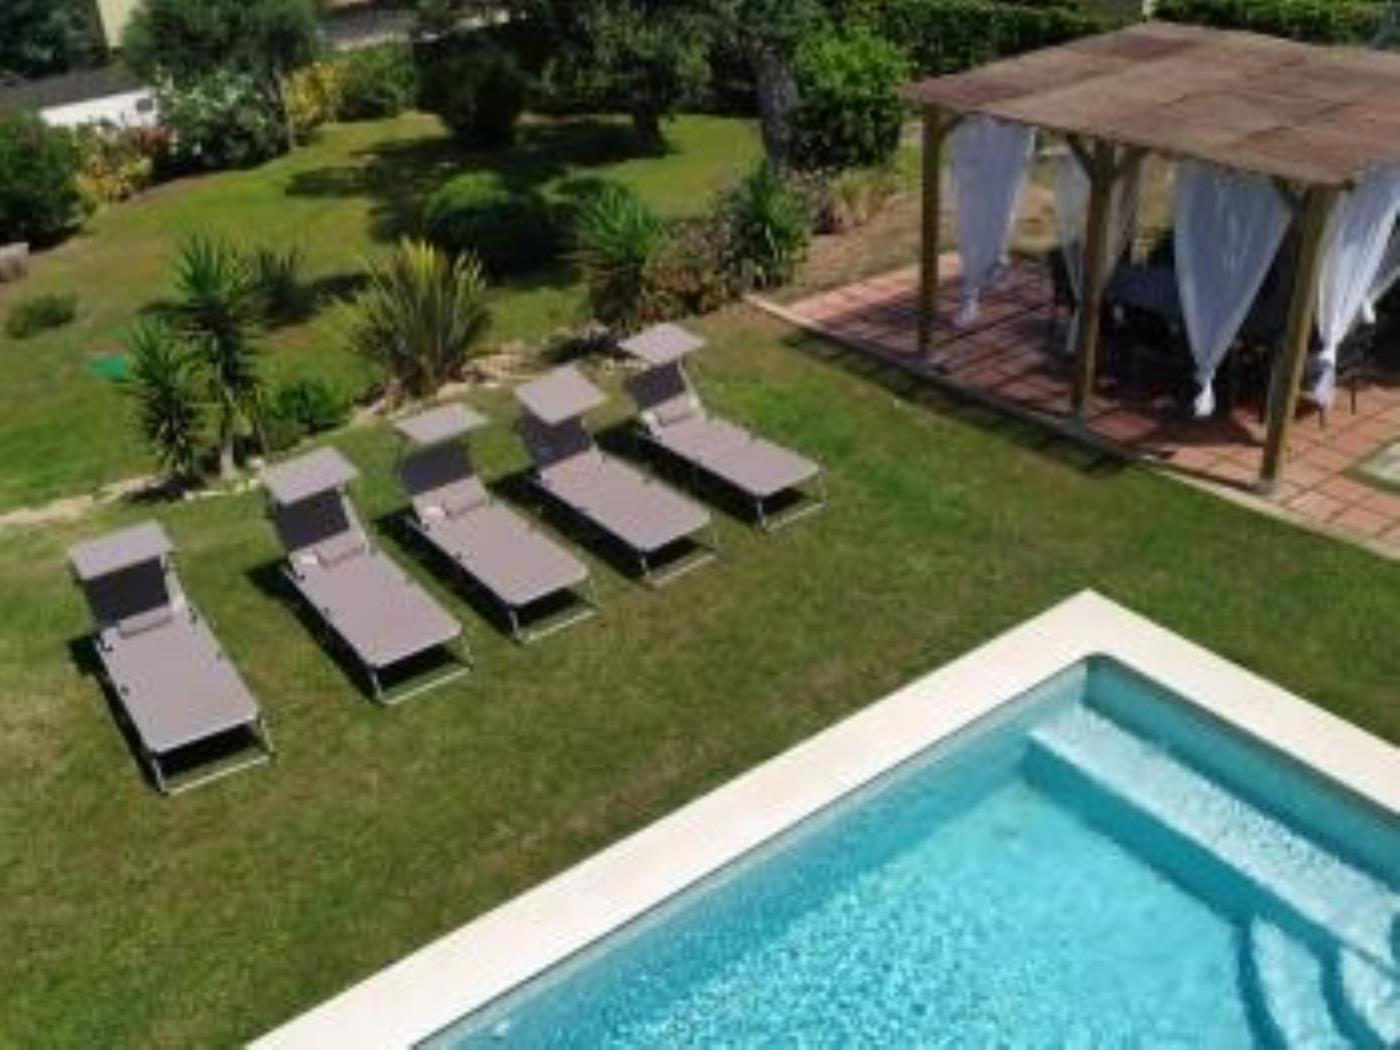 Maison confortable avec piscine dans une urbanisation privilégiée à S'Agaró